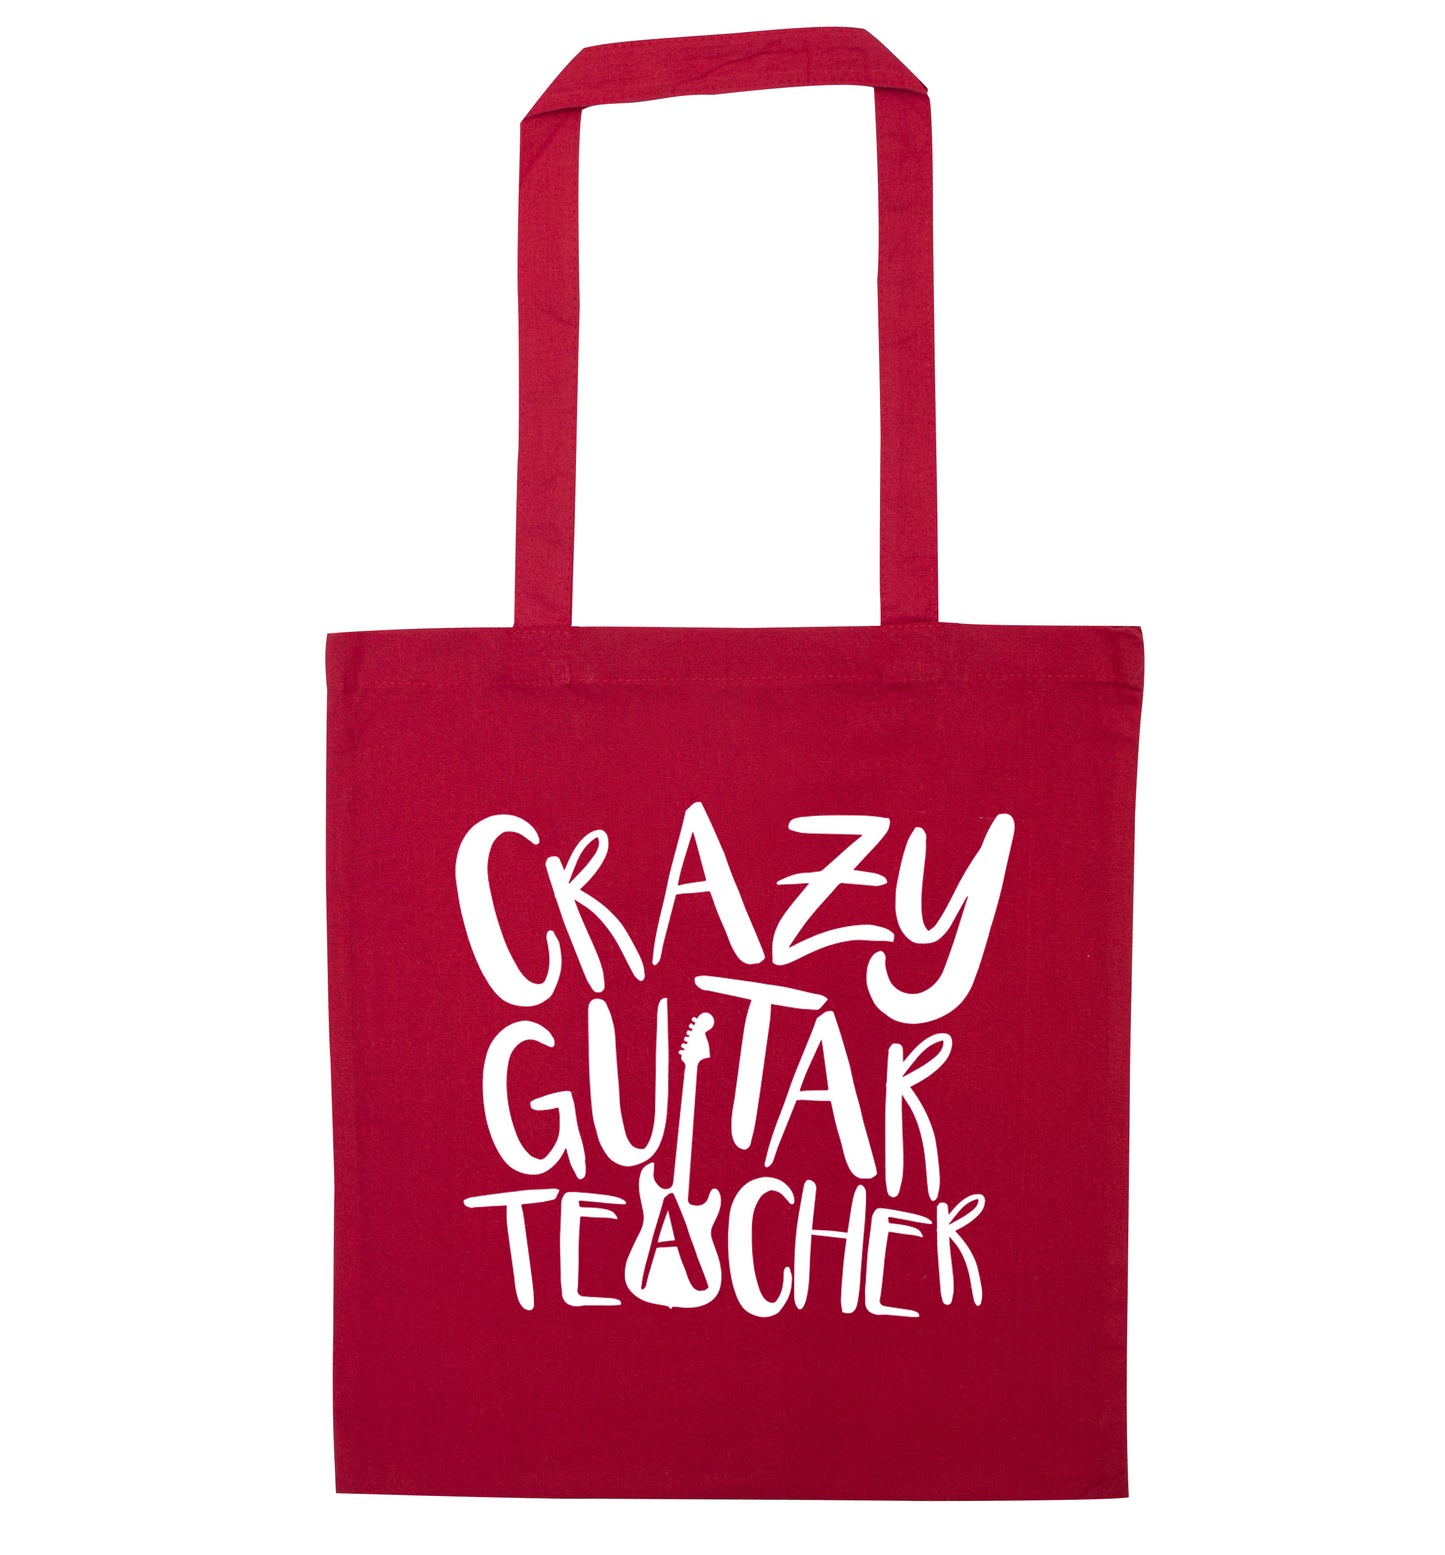 Crazy guitar teacher red tote bag